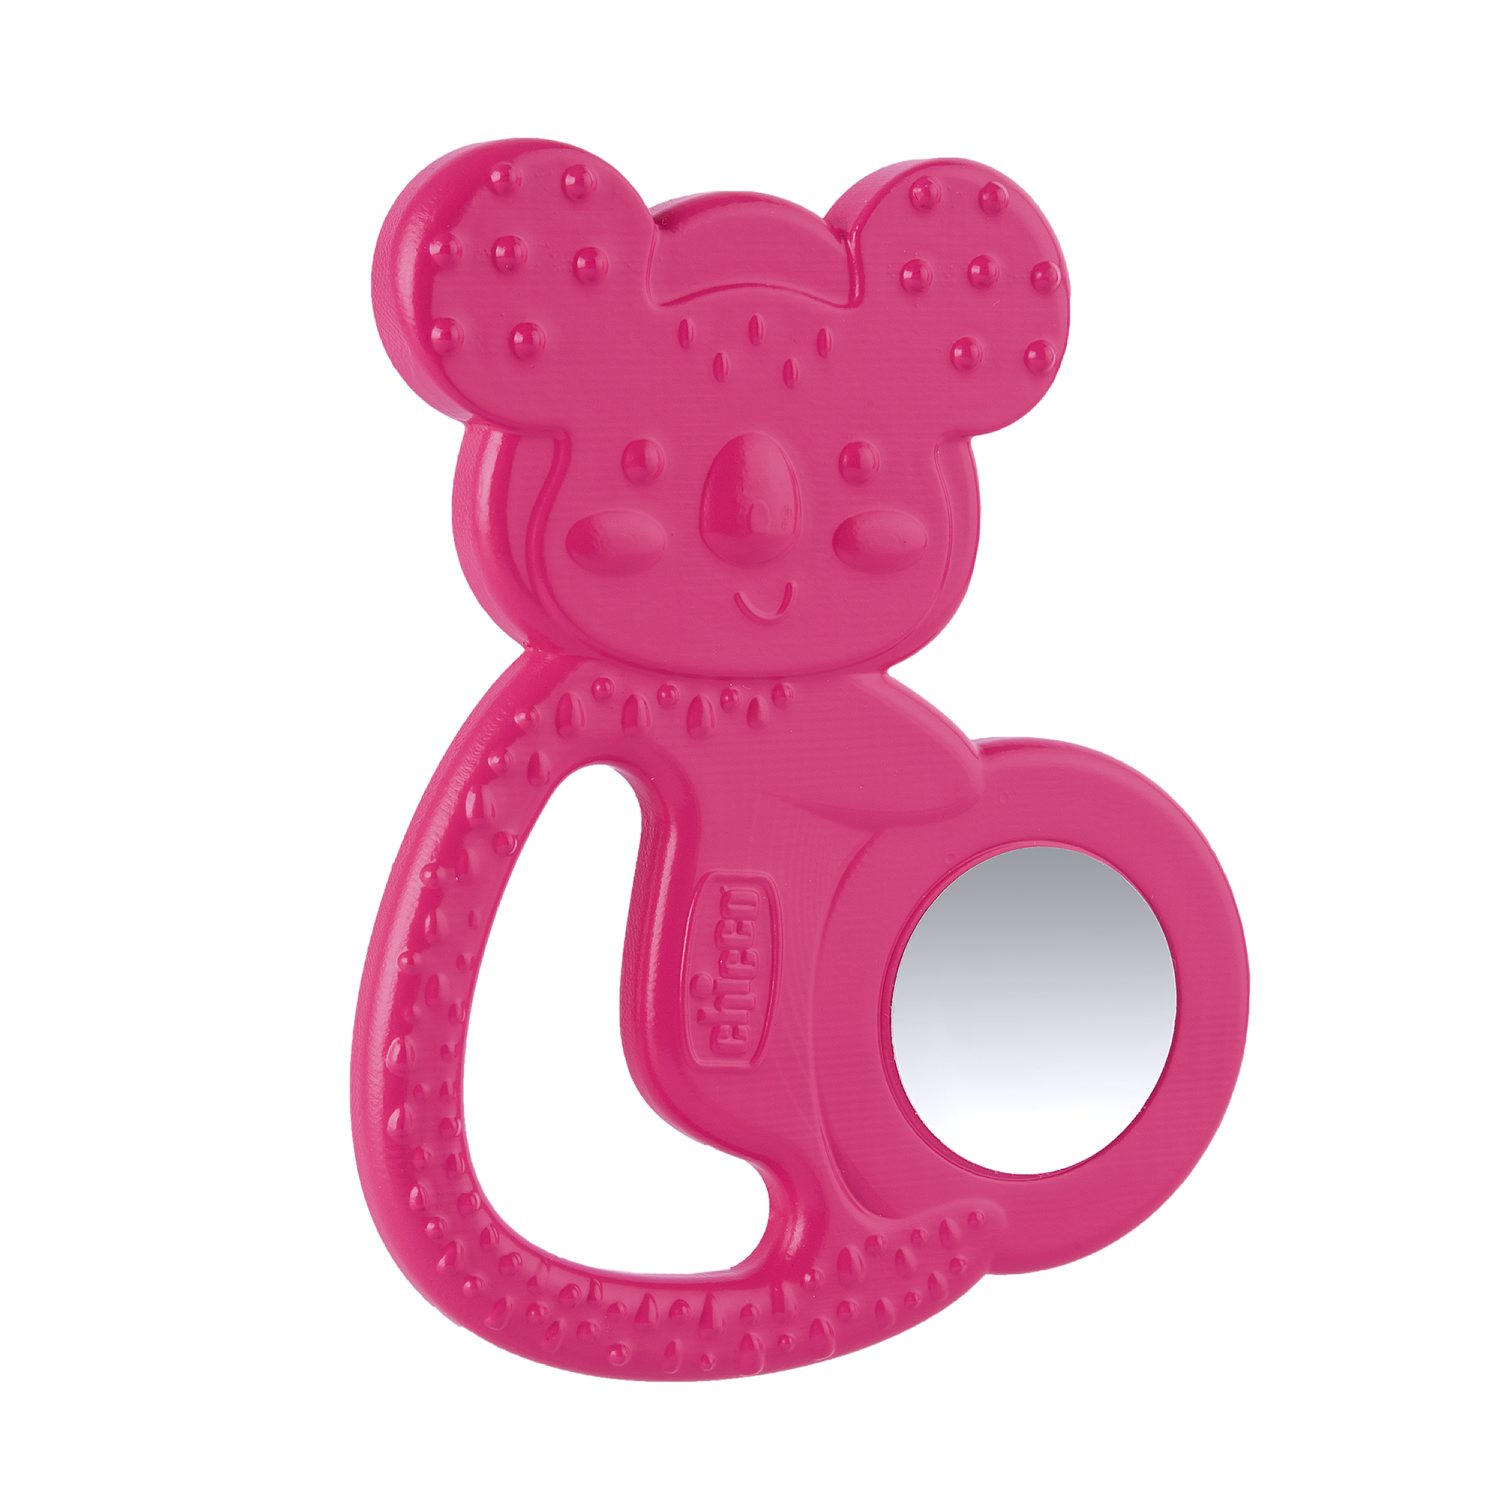 Игрушка с зубным кольцом Chicco Коала, розовая, 4мес+